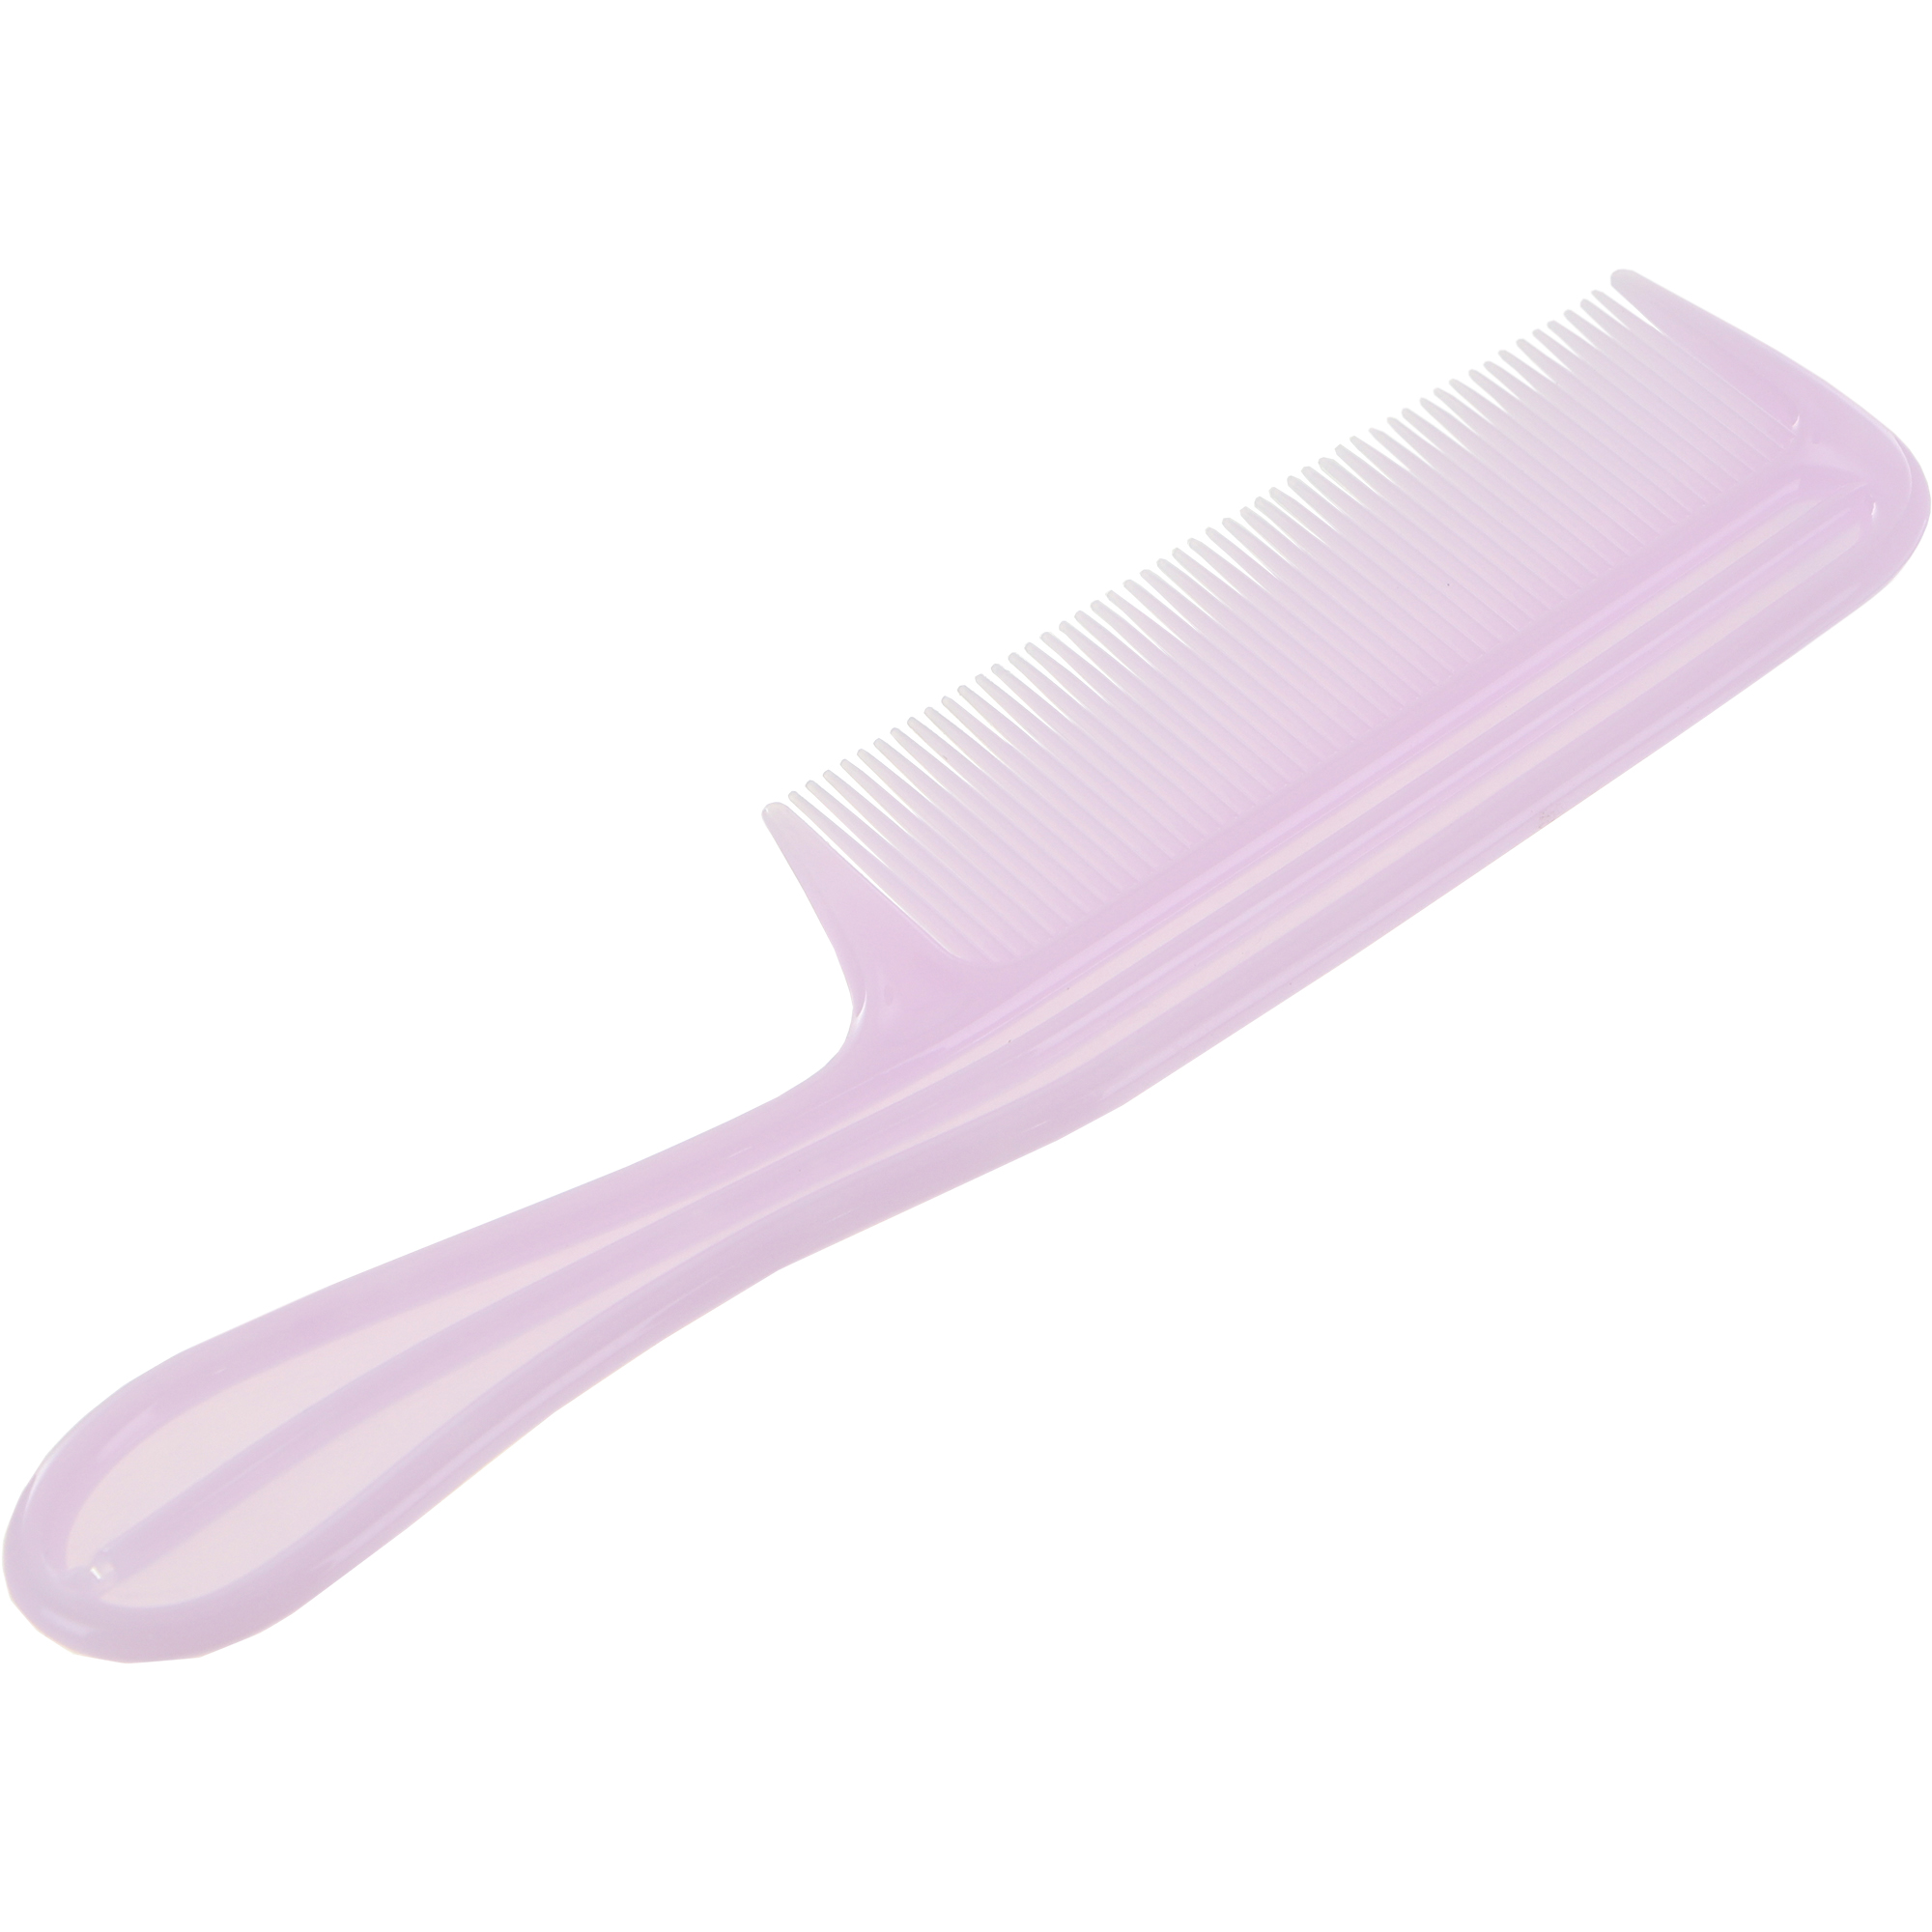 Расческа Nice View пластиковая антистатическая с длинными зубьями L-19,8 двусторонняя щётка расческа с волнистыми зубьями средняя 6 х 19 см розовая